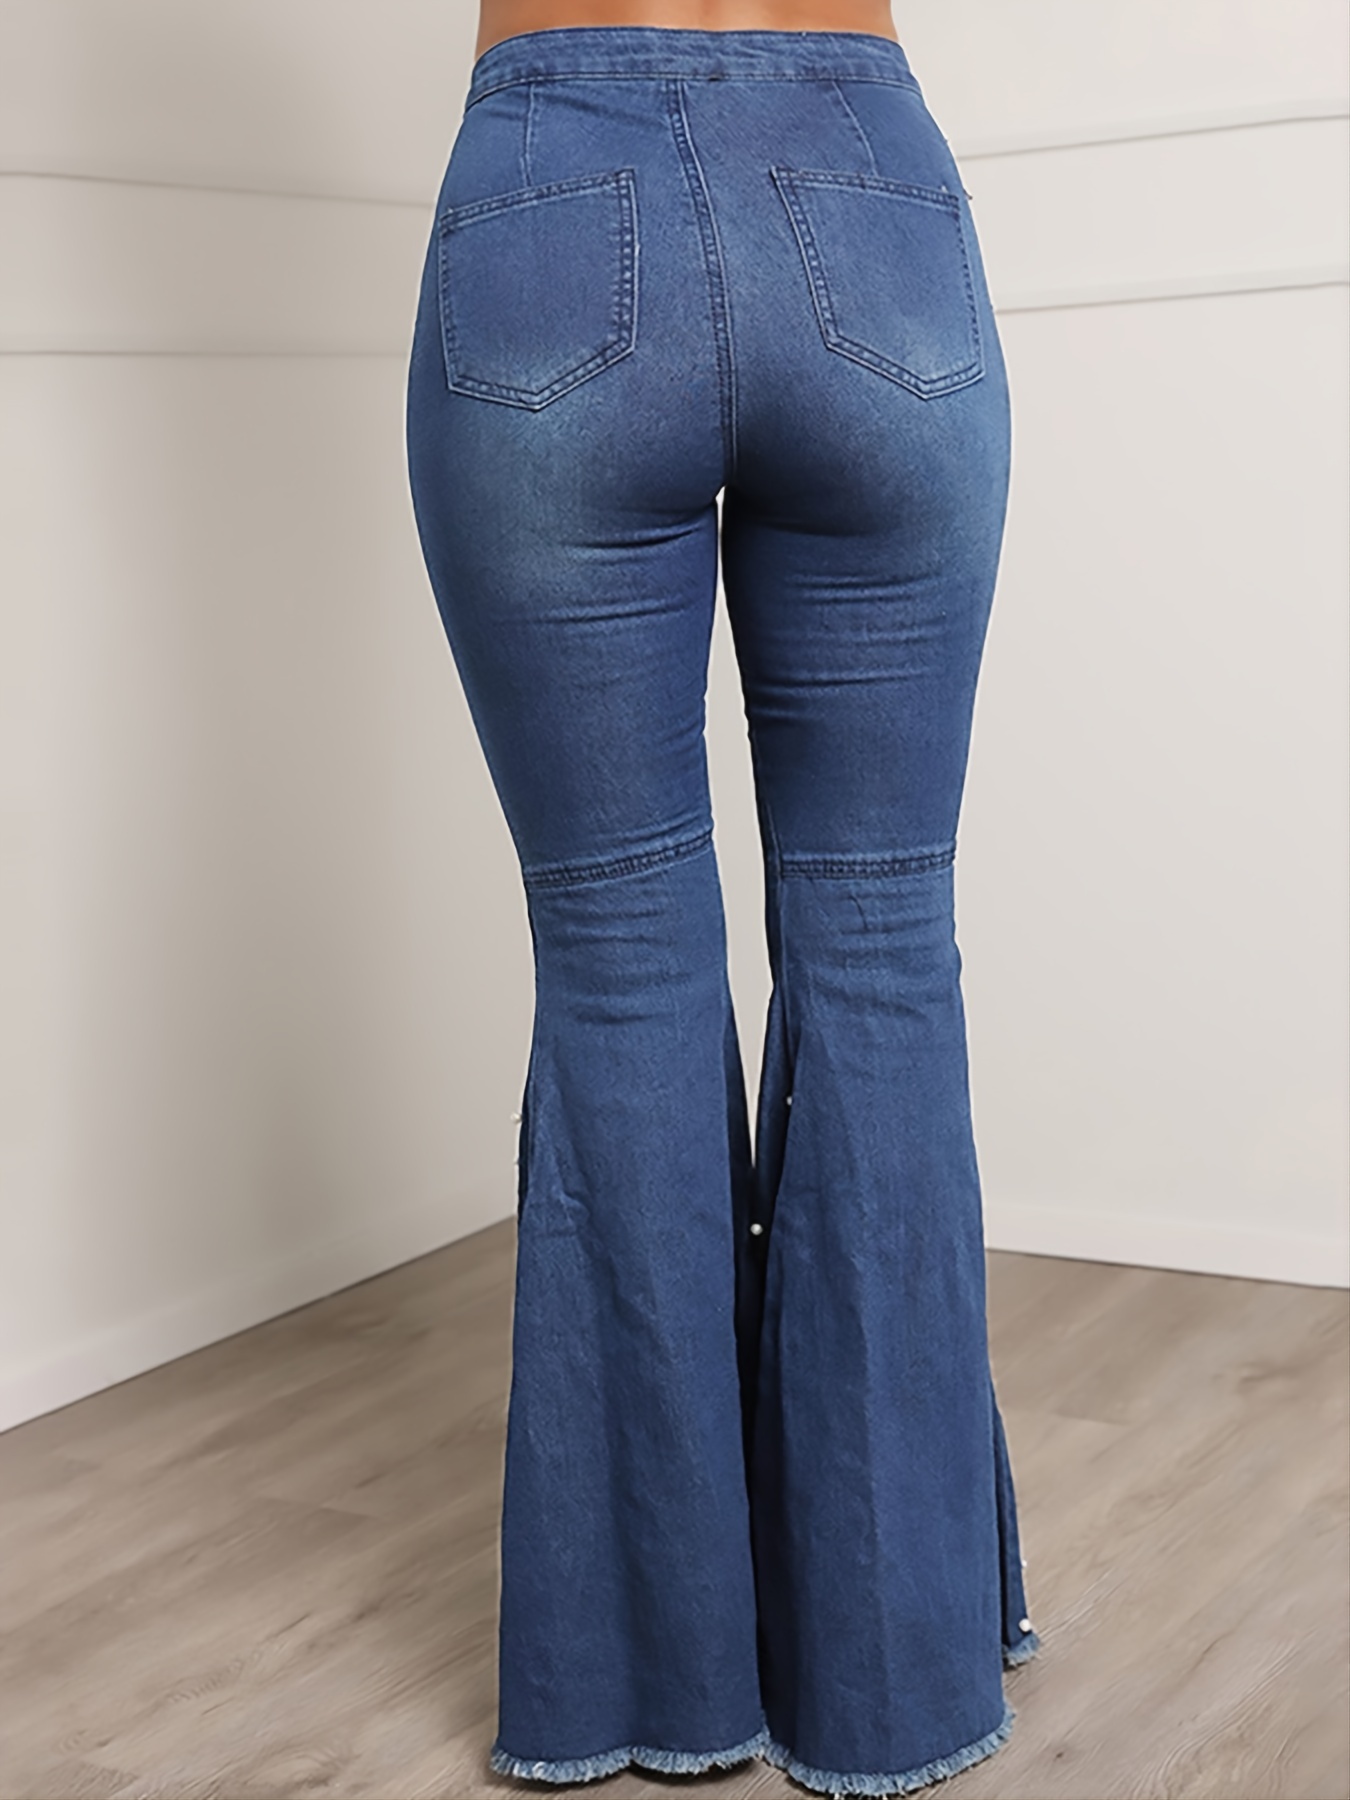 Jeans Acampanados Con Dobladillo Sin Rematar Azul, Pantalones De Mezclilla  De Pierna Ancha Con Cintura Alta Rasgada En La Parte Inferior De Campana, P